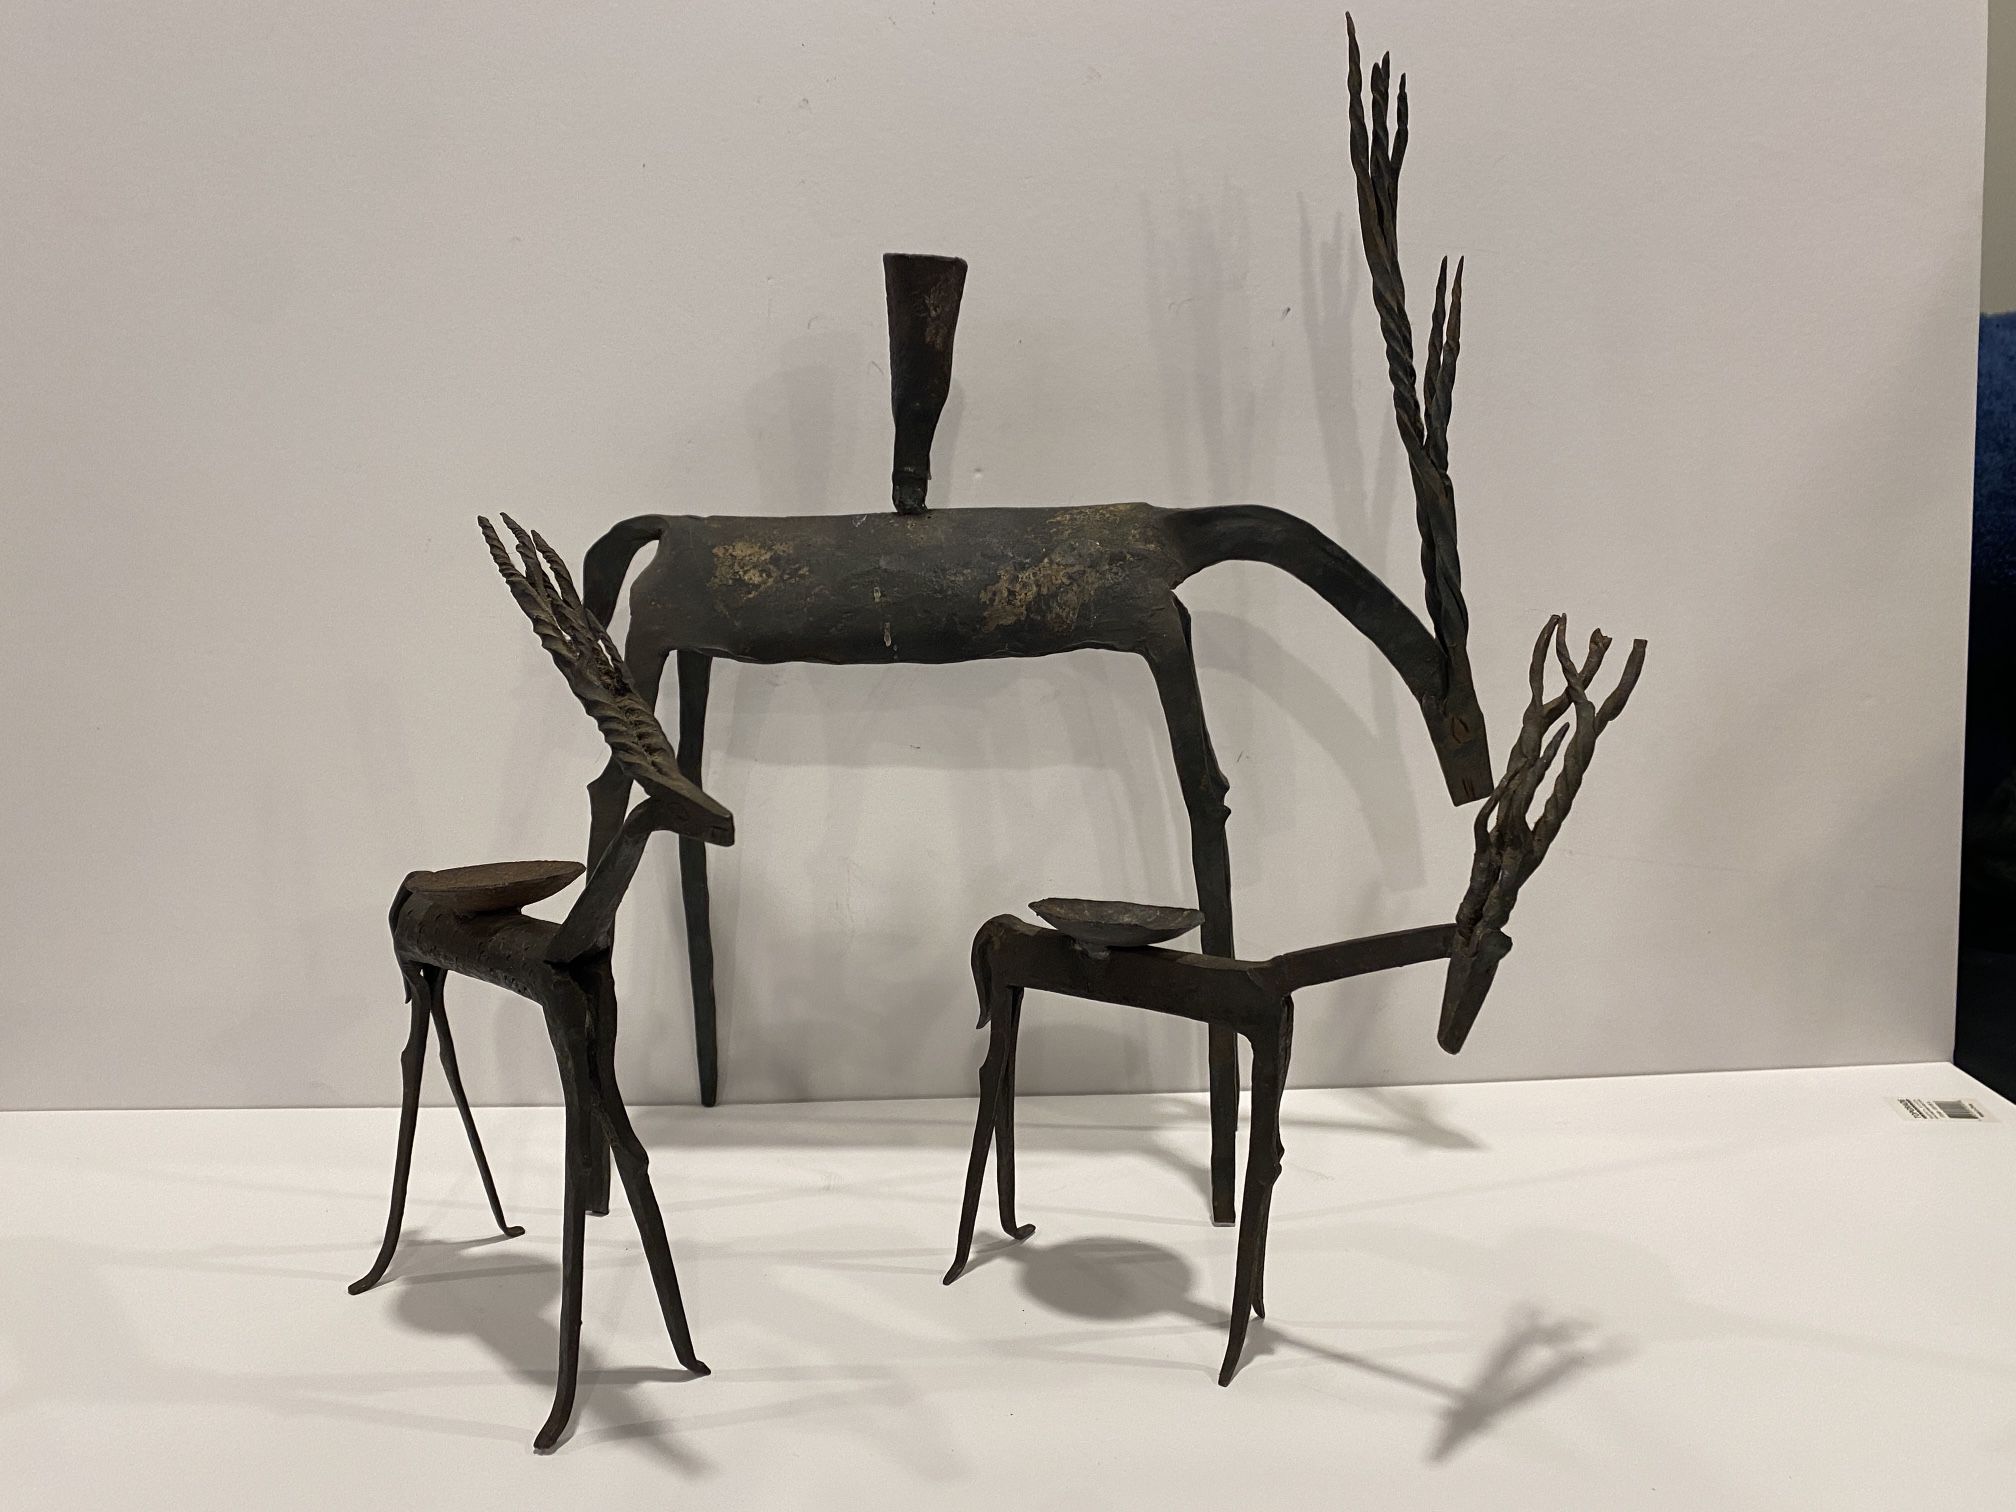 Vintage Brutalist form Forged Iron Metal Rustic Antelope / Gazelle Sculpture Candel Holders. Set of 3.